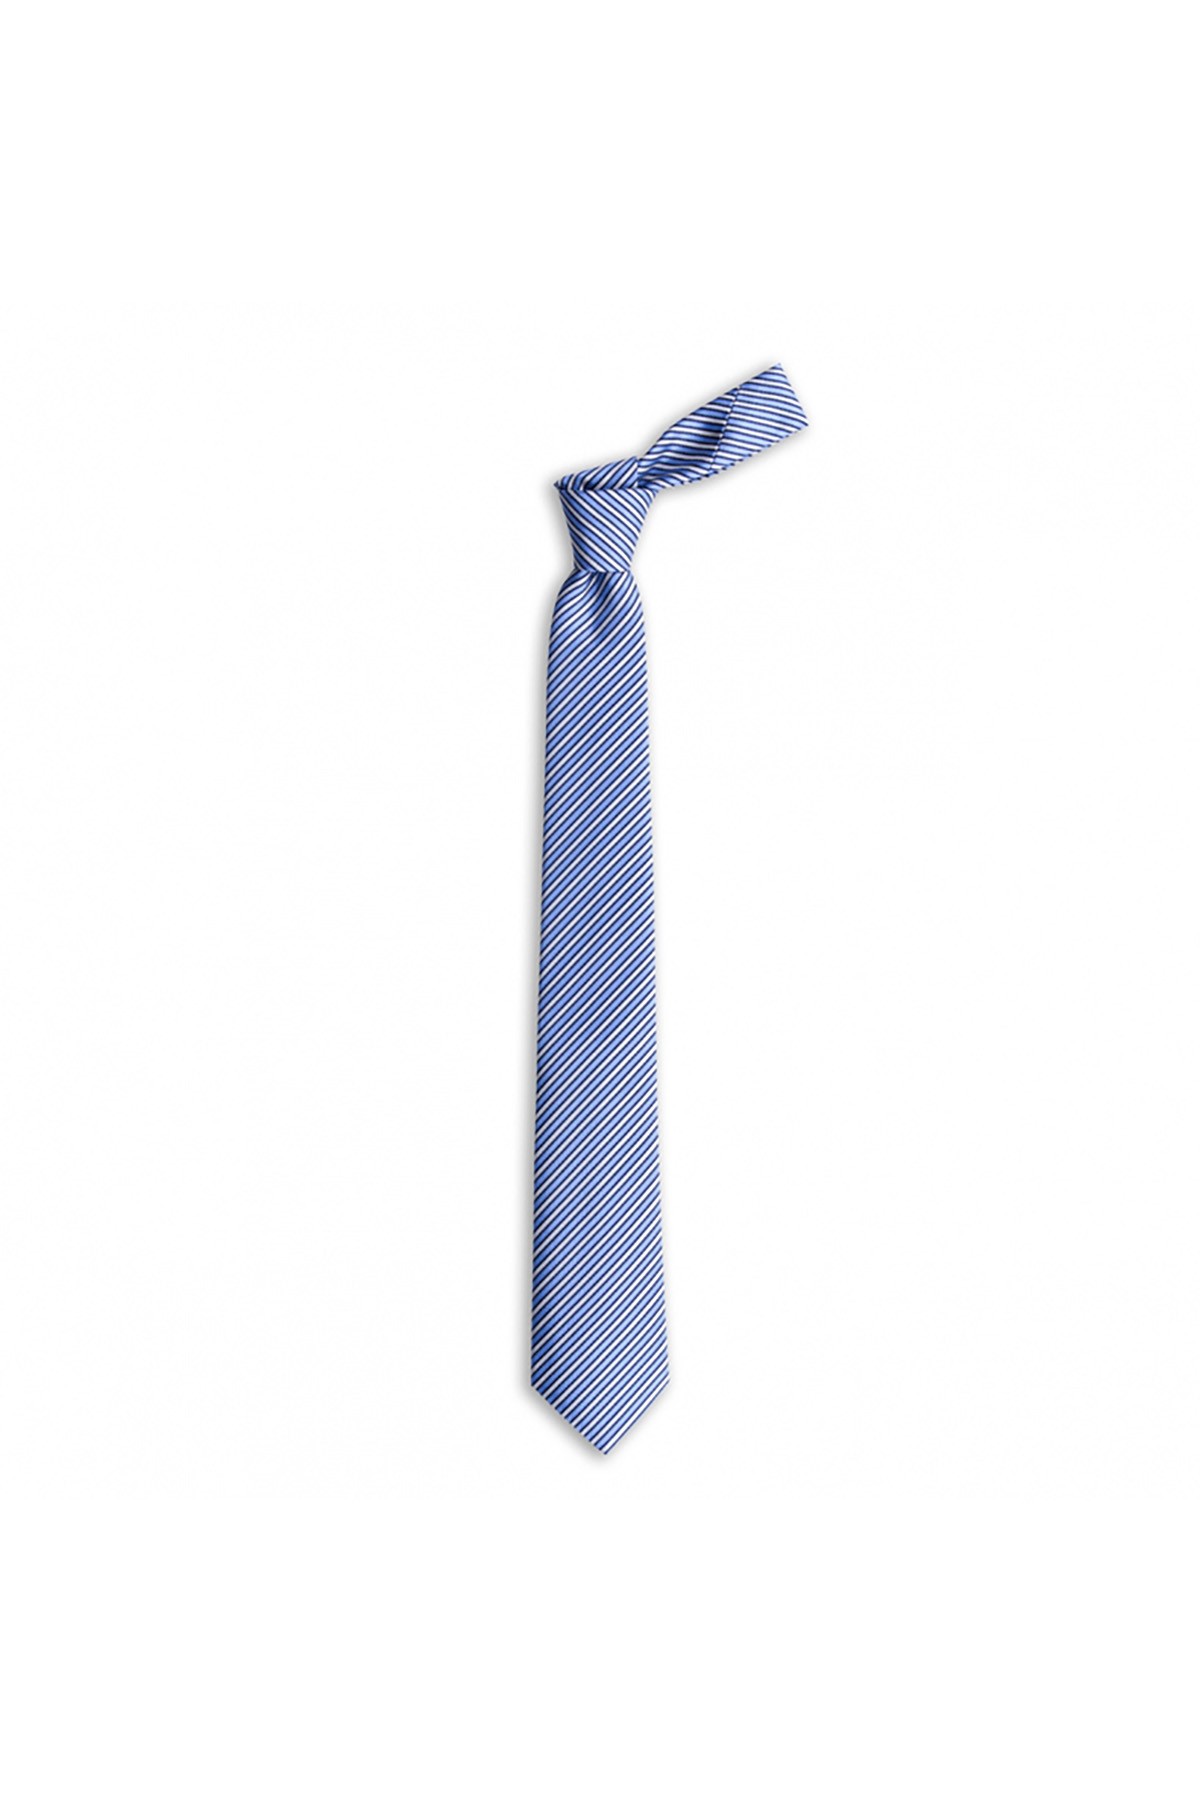 Çok çizgili 7,5 cm genişliğinde klasik ipek kravat - Mavi